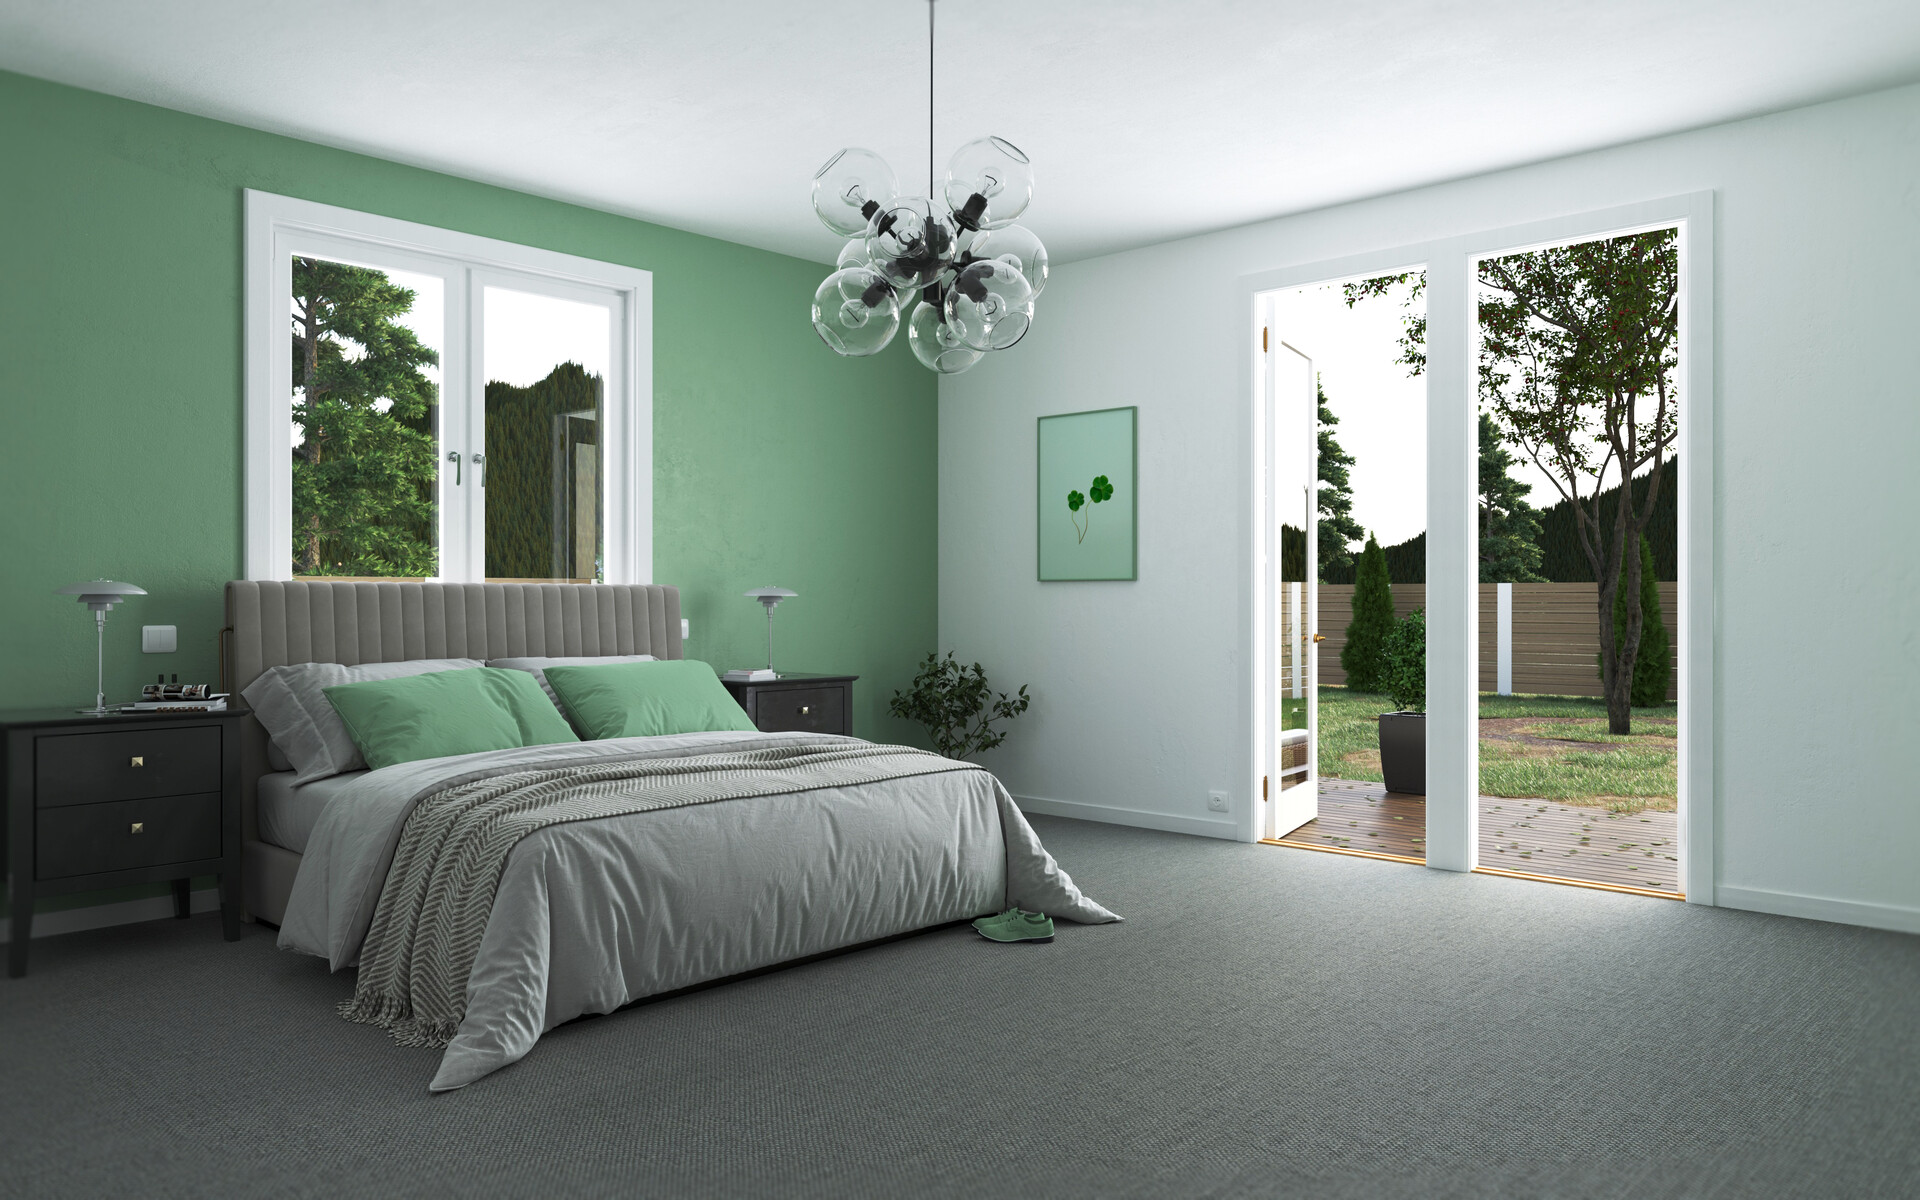 ArtStation - Bedroom Green